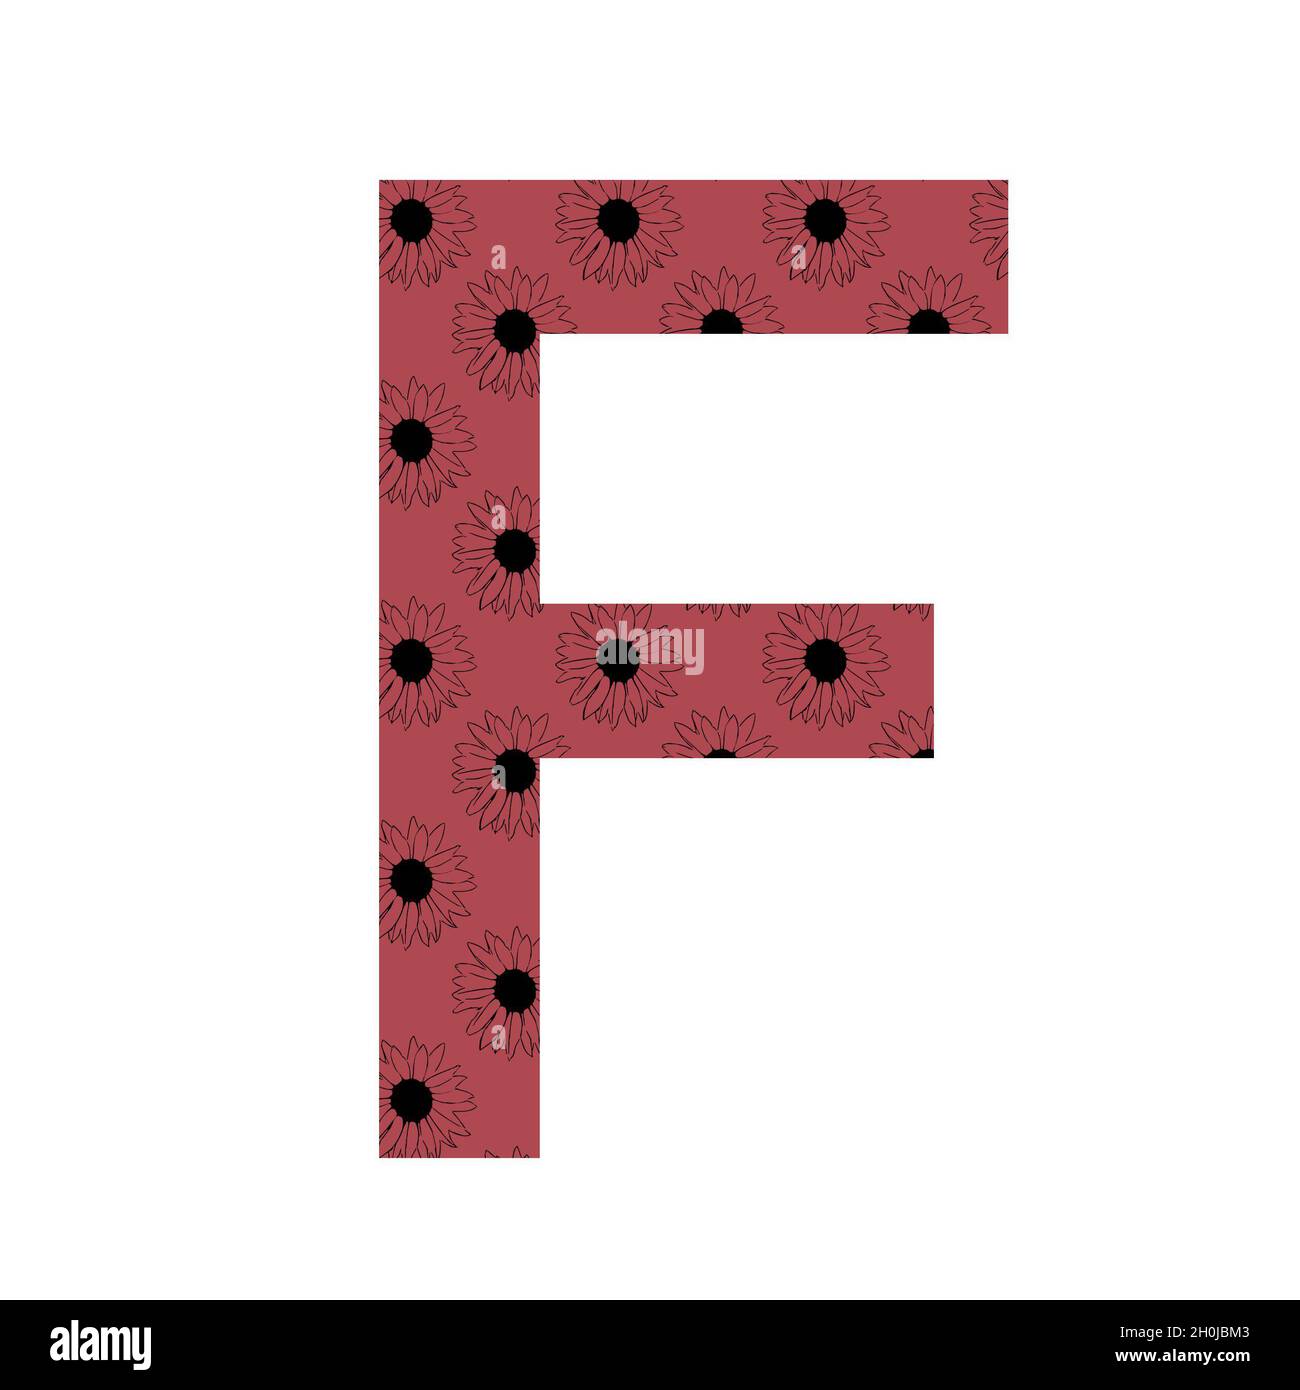 Lettera F dell'alfabeto realizzata con un motivo di girasoli con sfondo rosa scuro, isolato su sfondo bianco Foto Stock